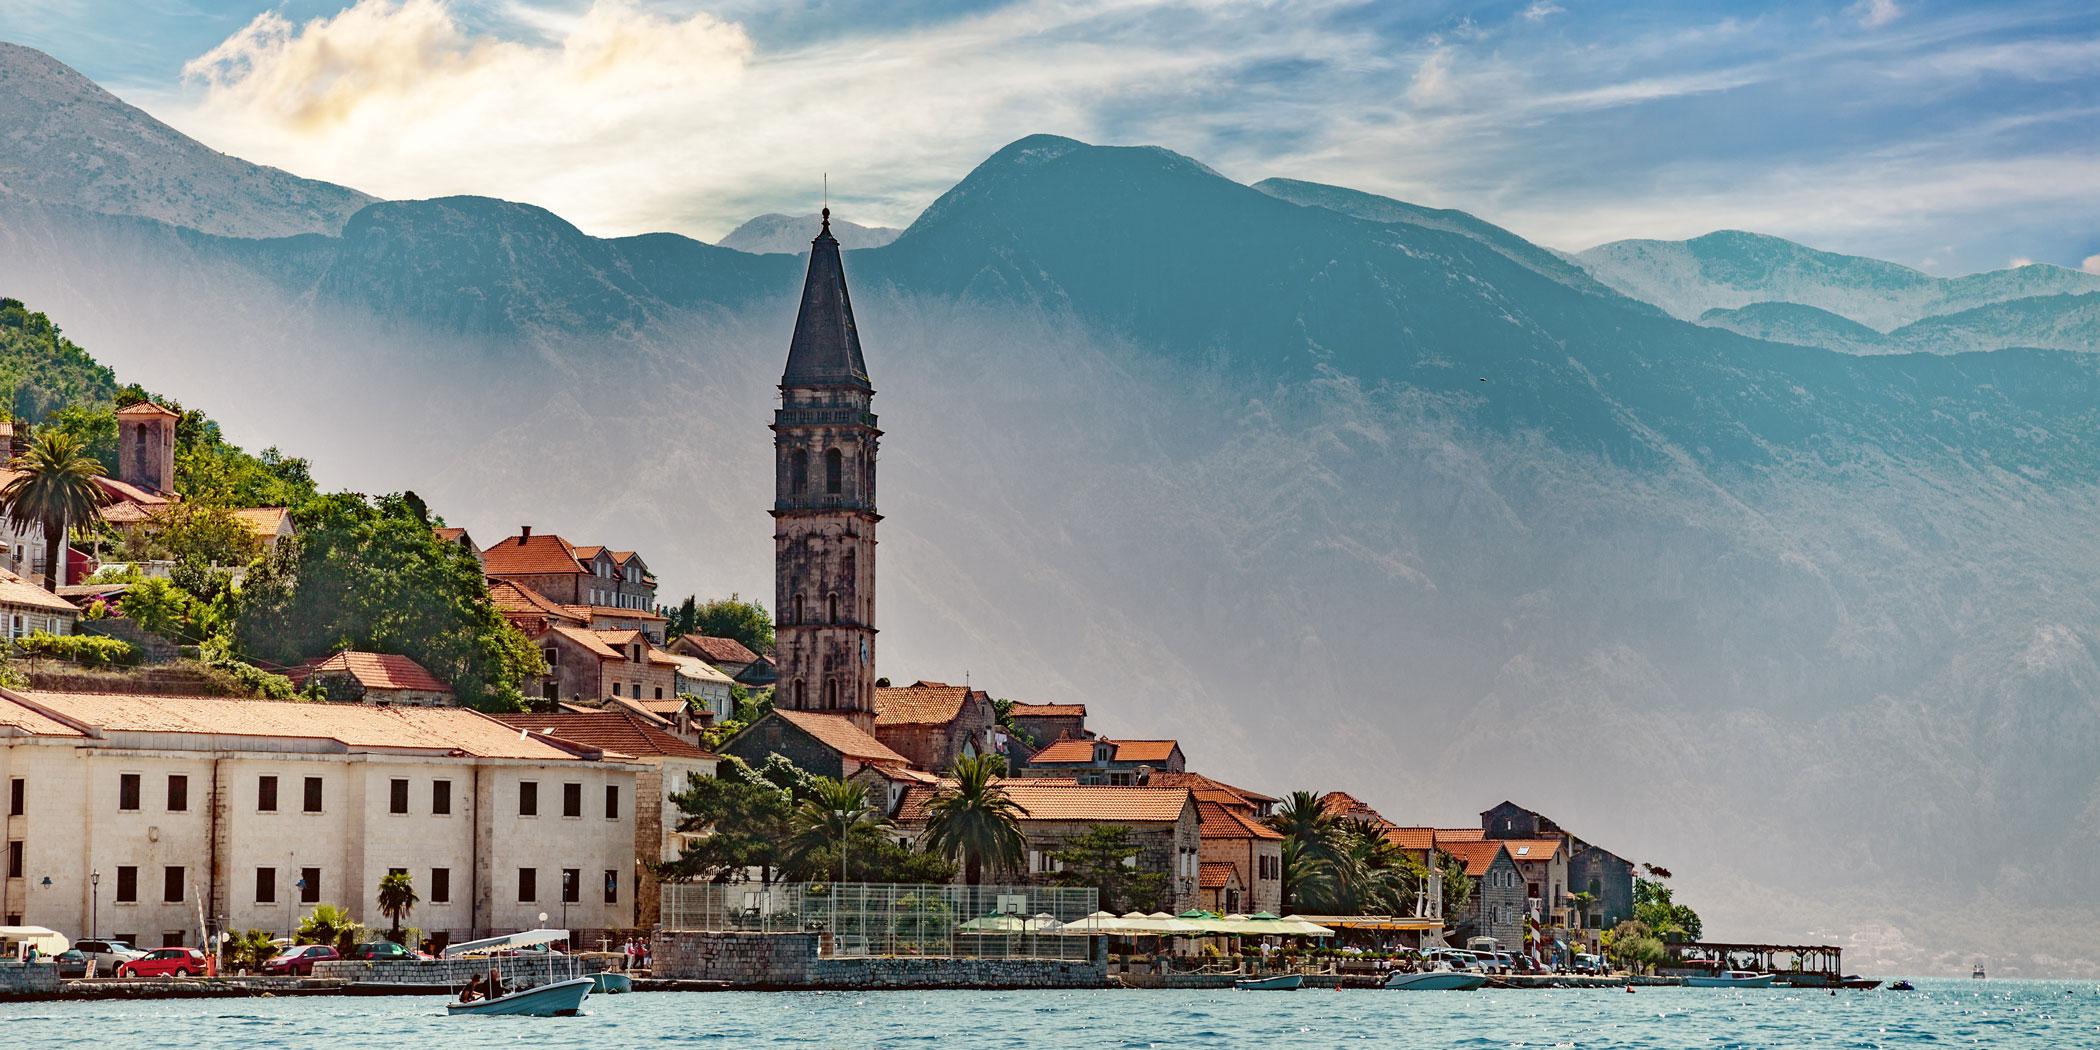  Perast, Kotor Bay, Montenegro Photo: Adobe Stock